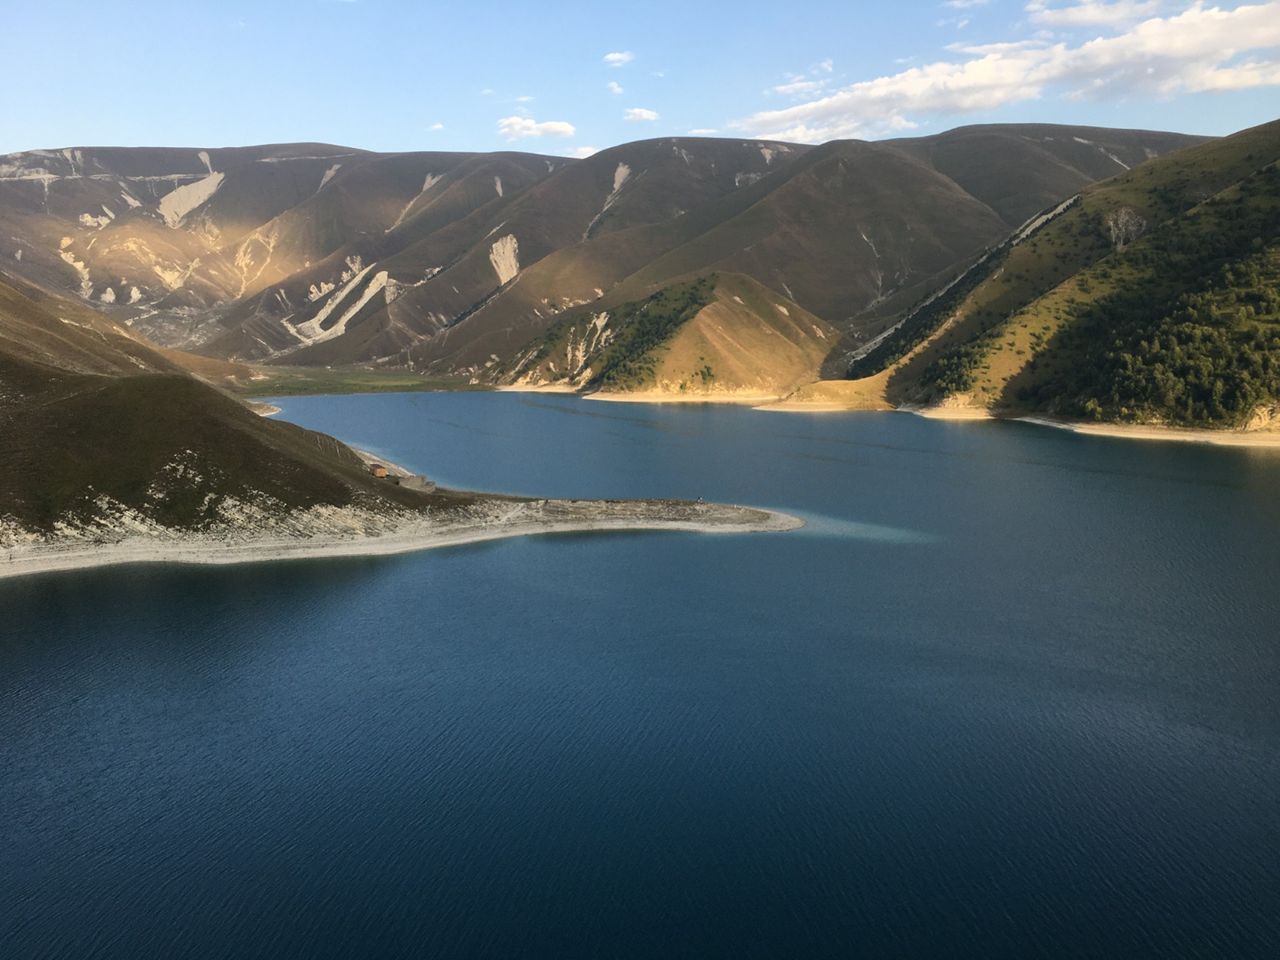 К озеру Кезеной-Ам через горы Дагестана | Цена 21400₽, отзывы, описание экскурсии